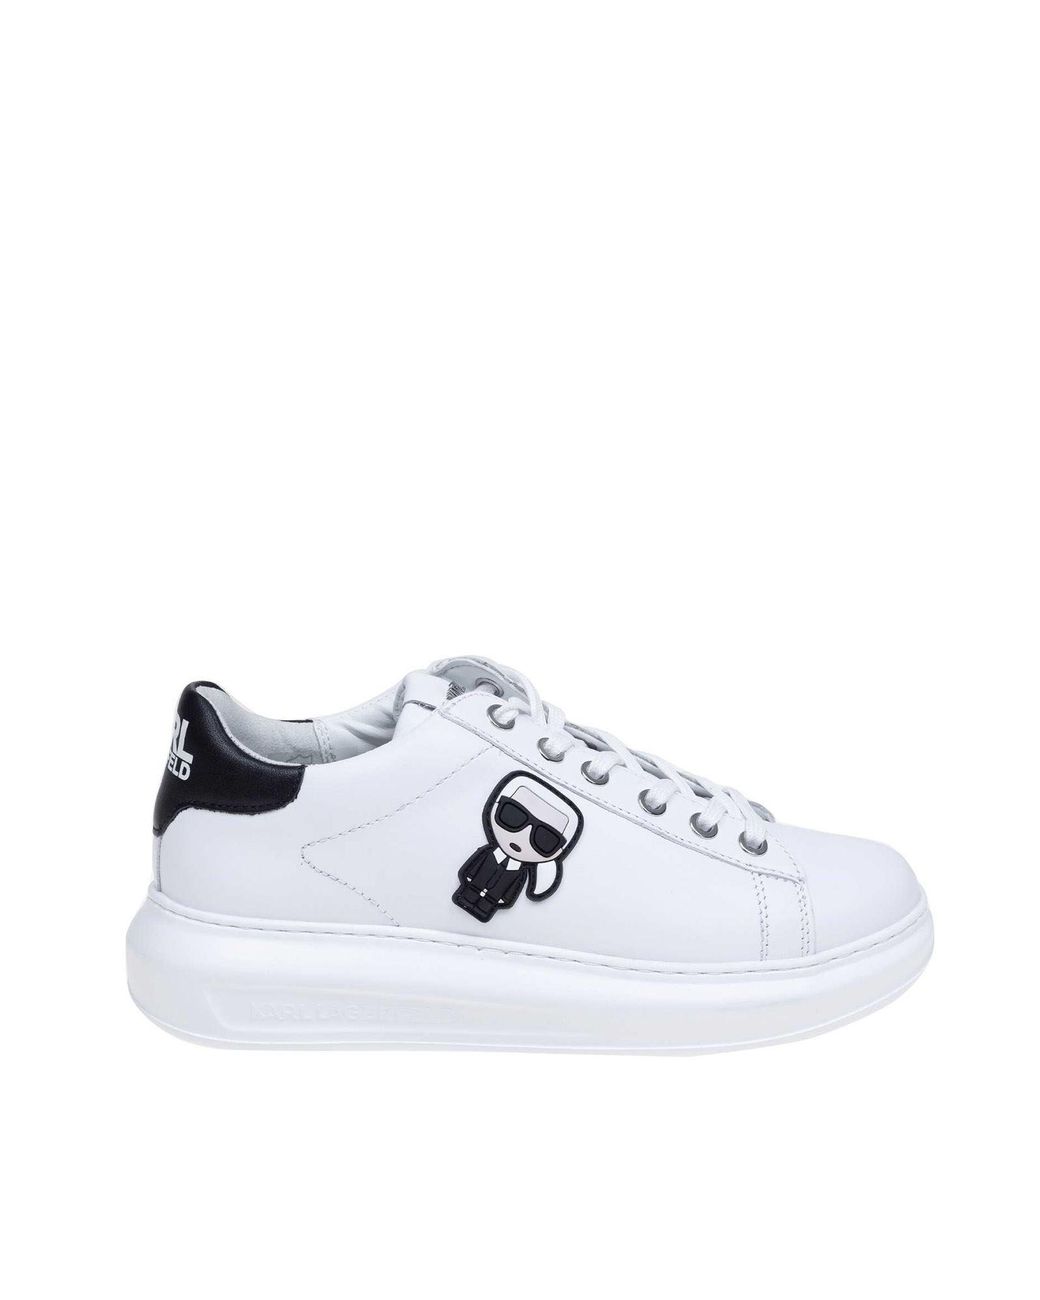 Karl Lagerfeld Karl Ikonic Kapri Sneakers in White - Lyst